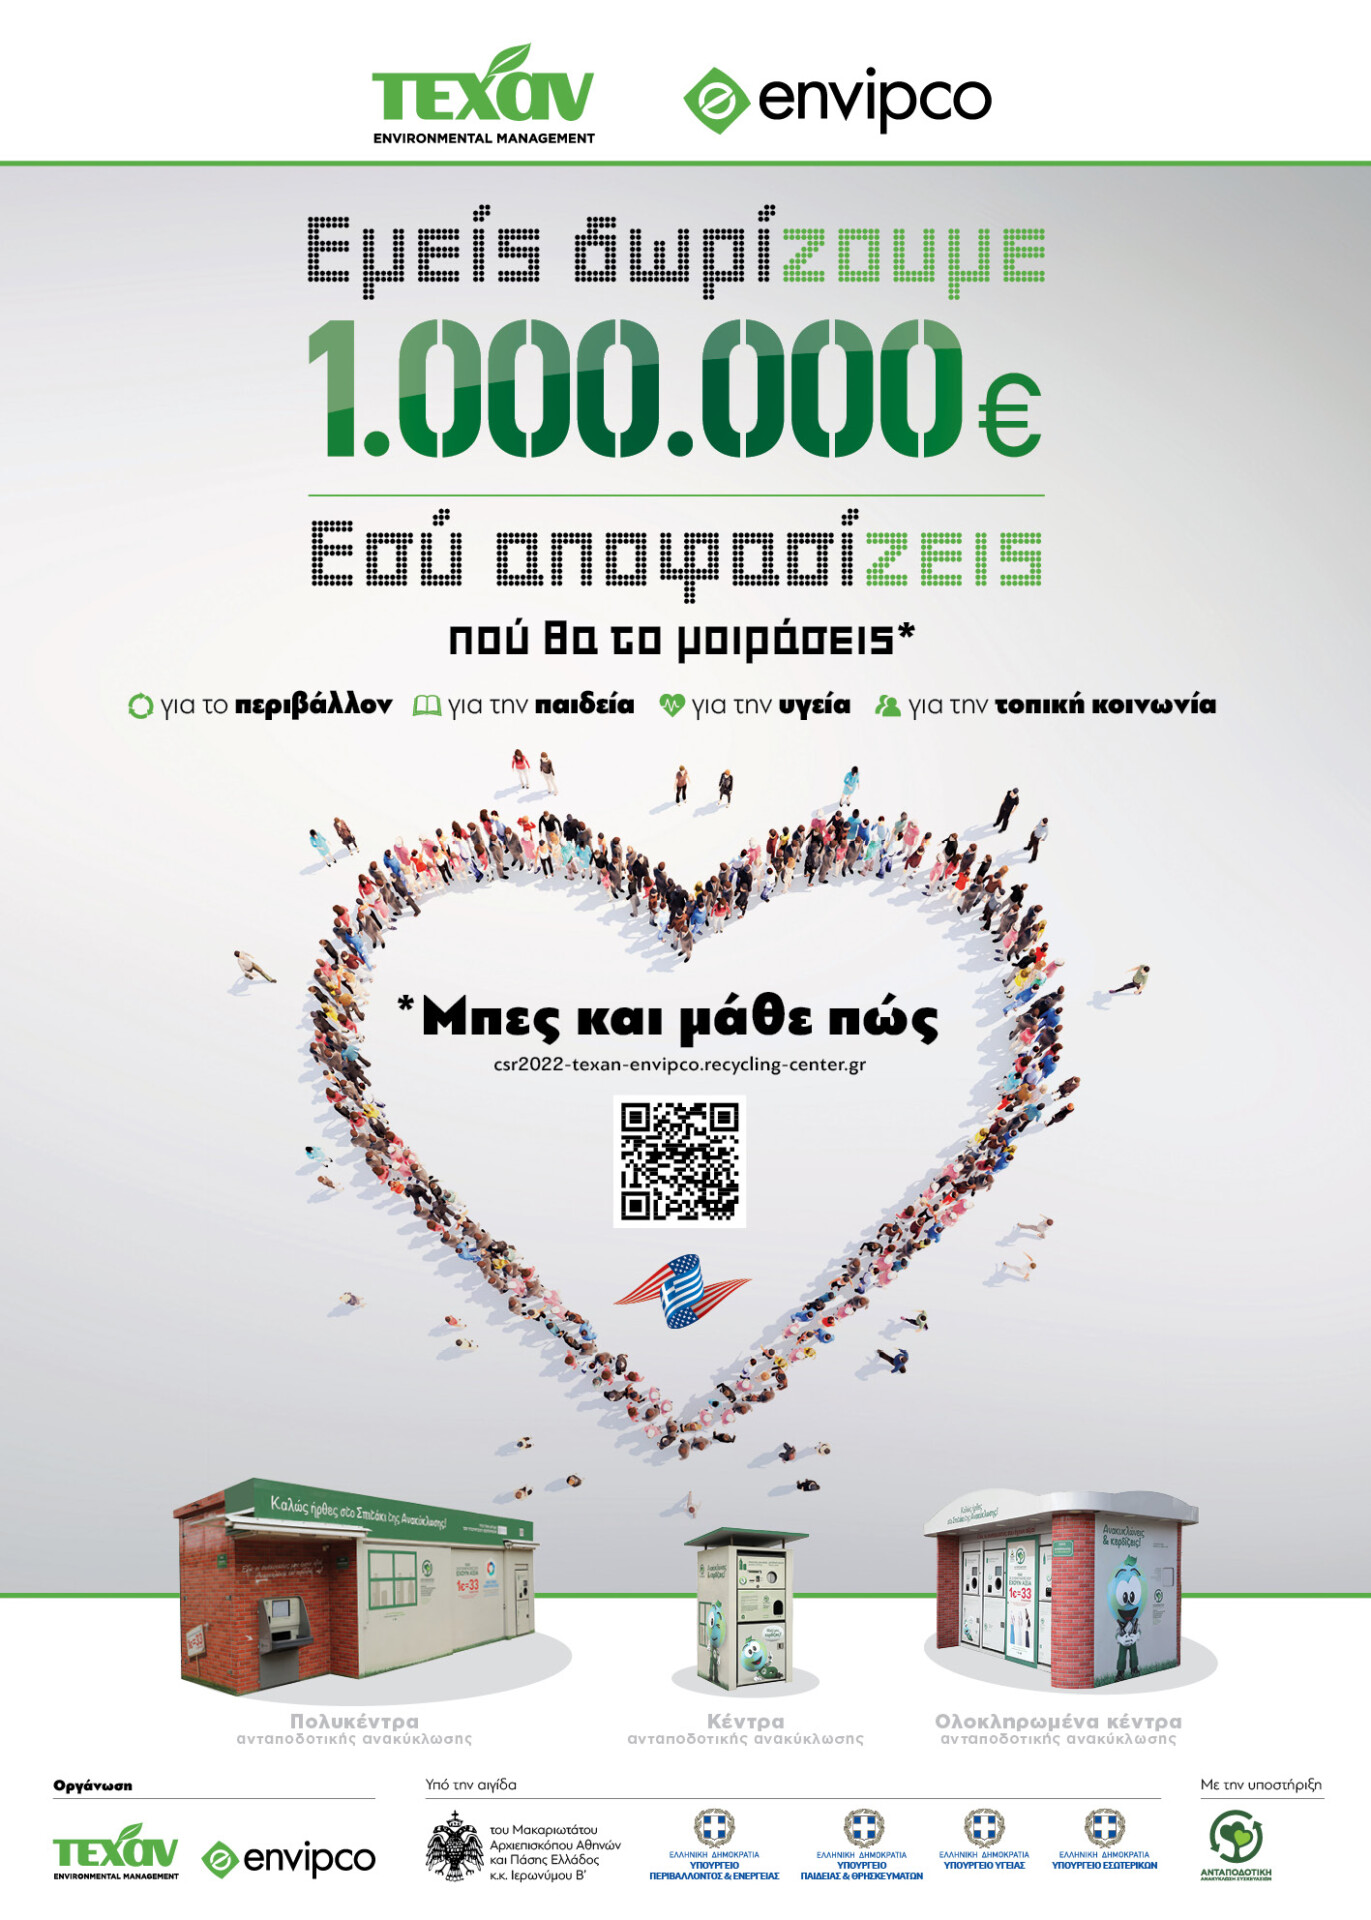 «Εμείς δωρίζουμε 1.000.000 €, Εσύ αποφασίζεις πού θα το μοιράσεις» © ΔΤ